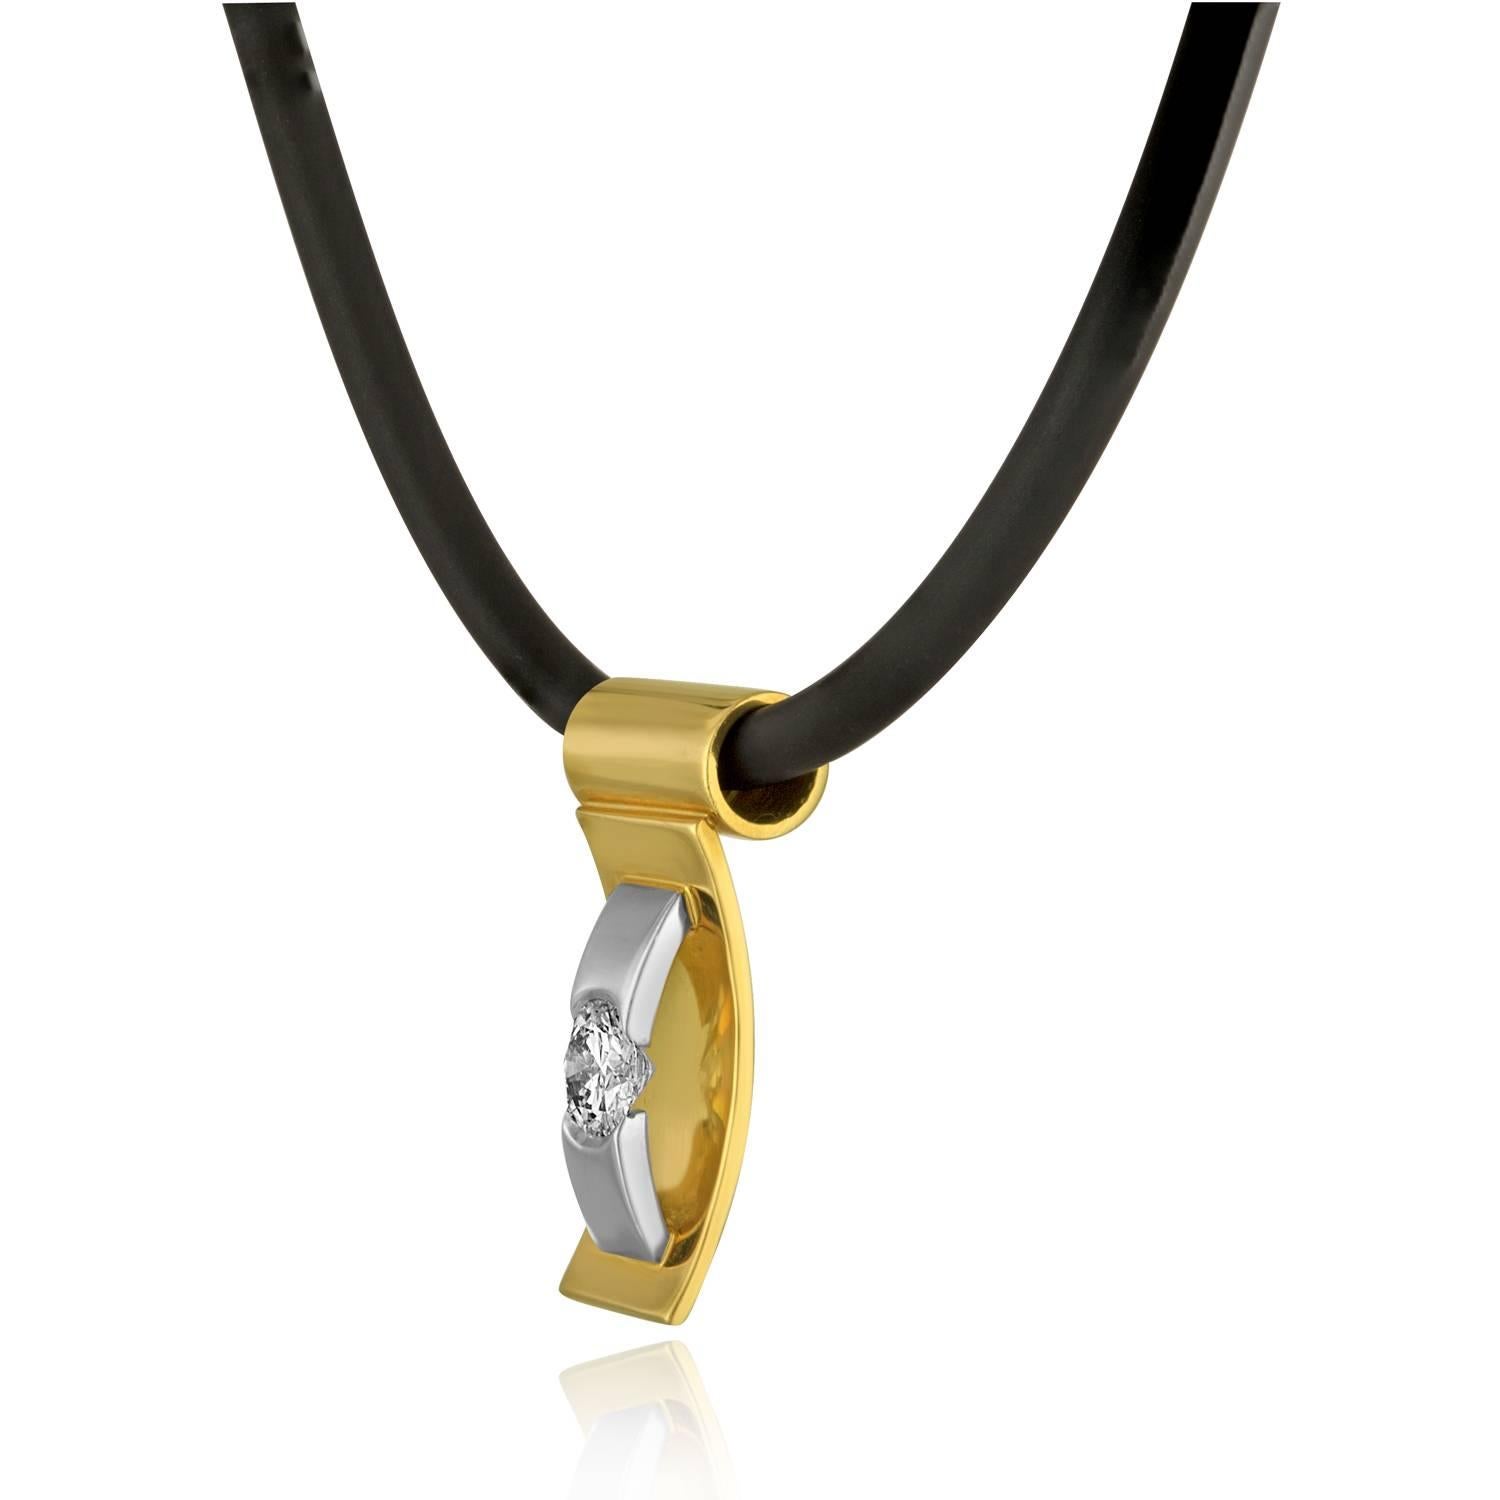 Sehr ungewöhnliche & abstrakte Unisex-Halskette.
Der Anhänger / Slide ist 18K Gelb & Weißgold
Der runde Stein ist GIA zertifiziert F SI1 0,57 Karat
Der Anhänger/das Dia hängt an einer Gummikette.
Die Halskette misst 18,5